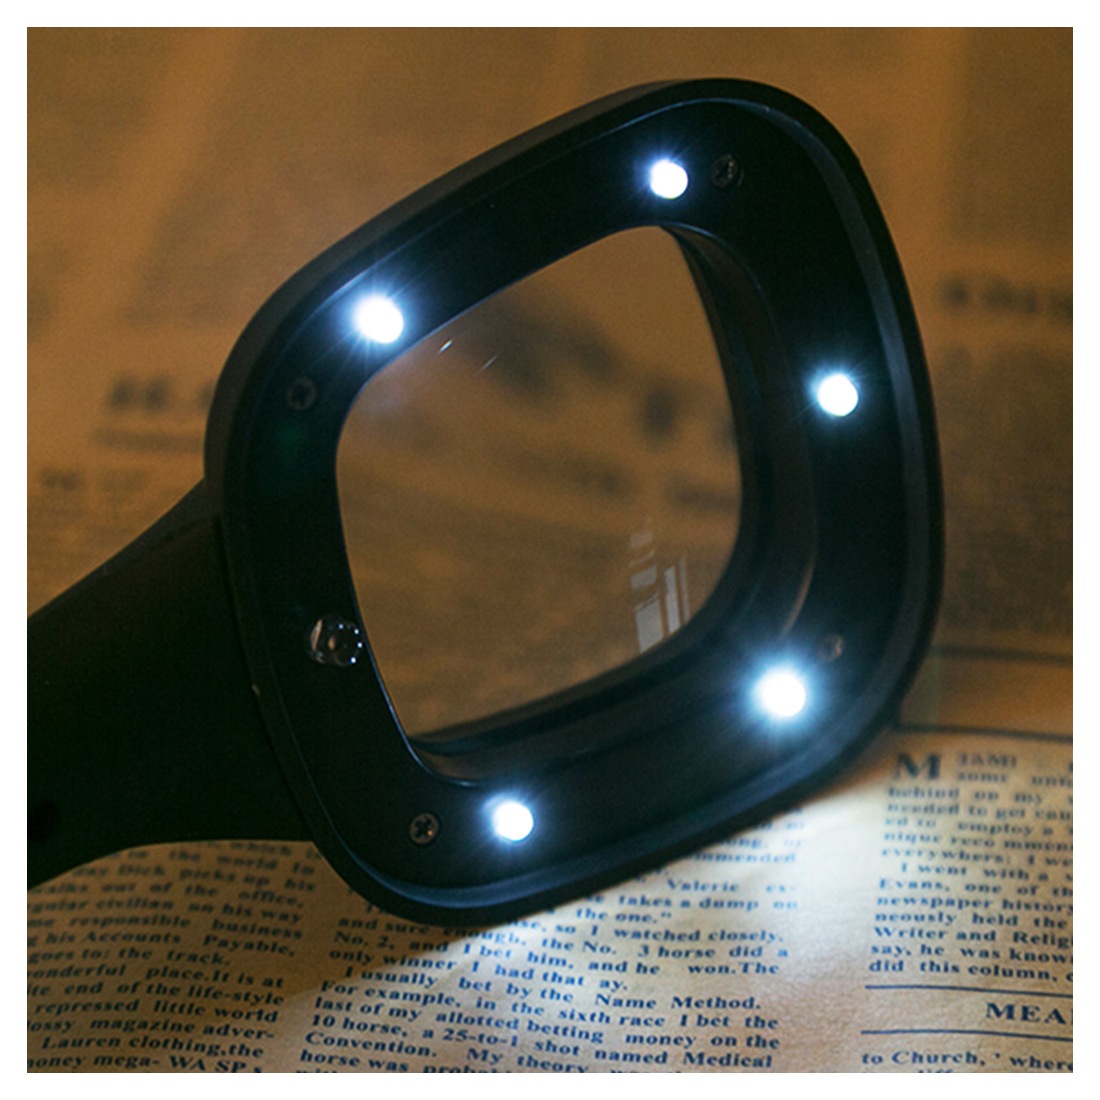 LED Light Magnifier